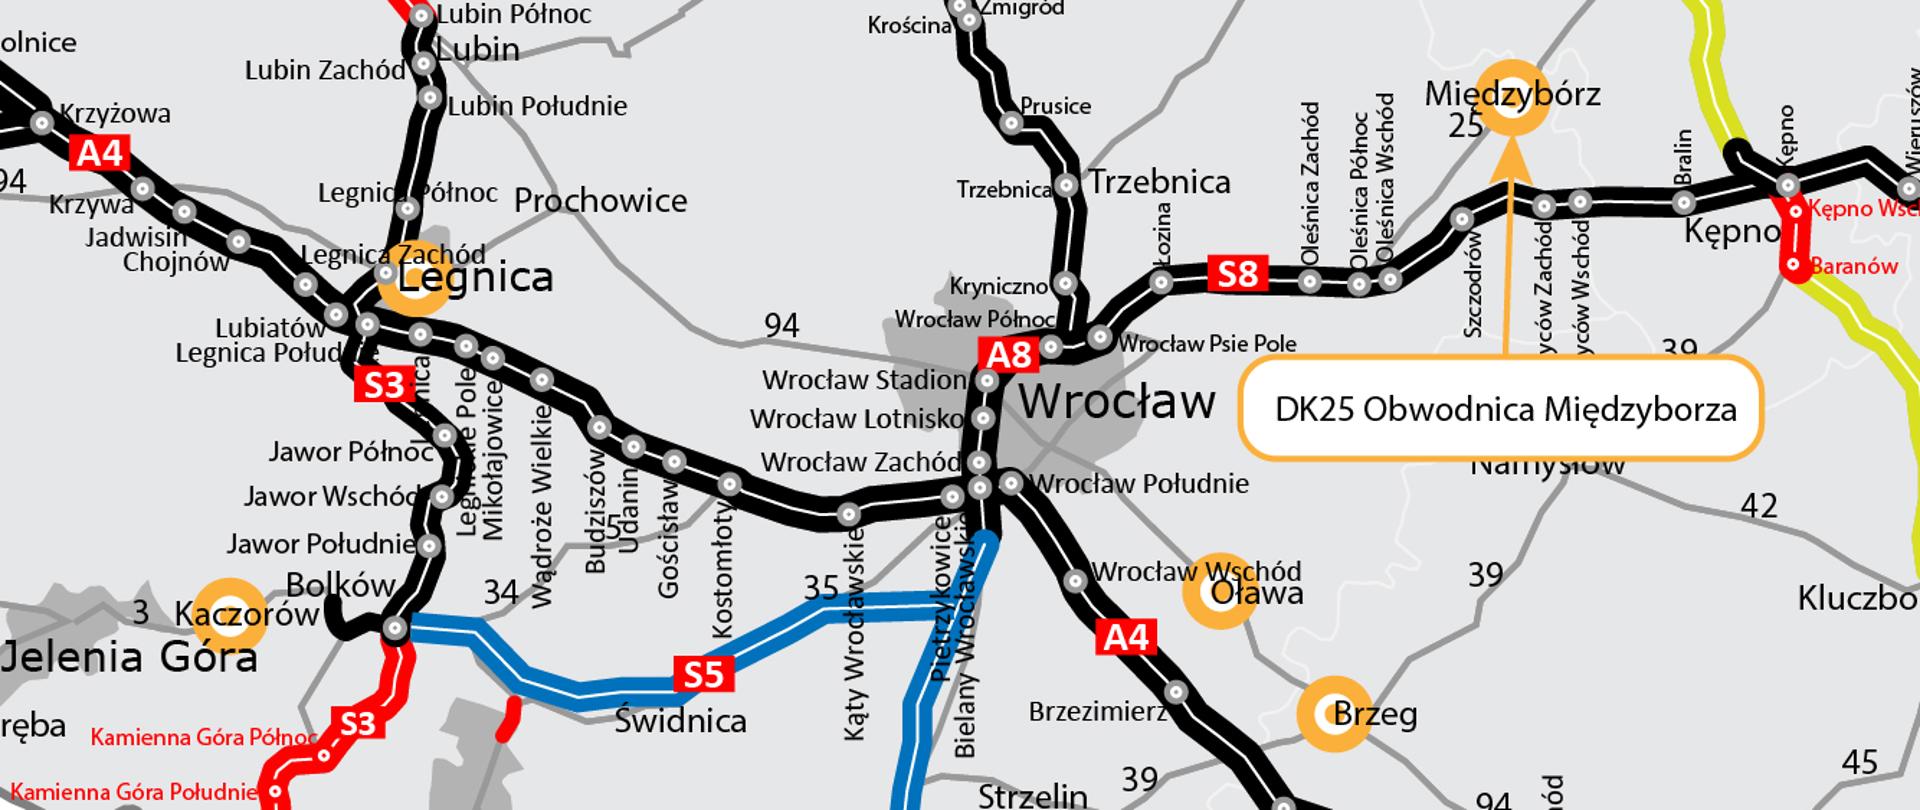 Na zdjęciu widać mapę Dolnego Śląska